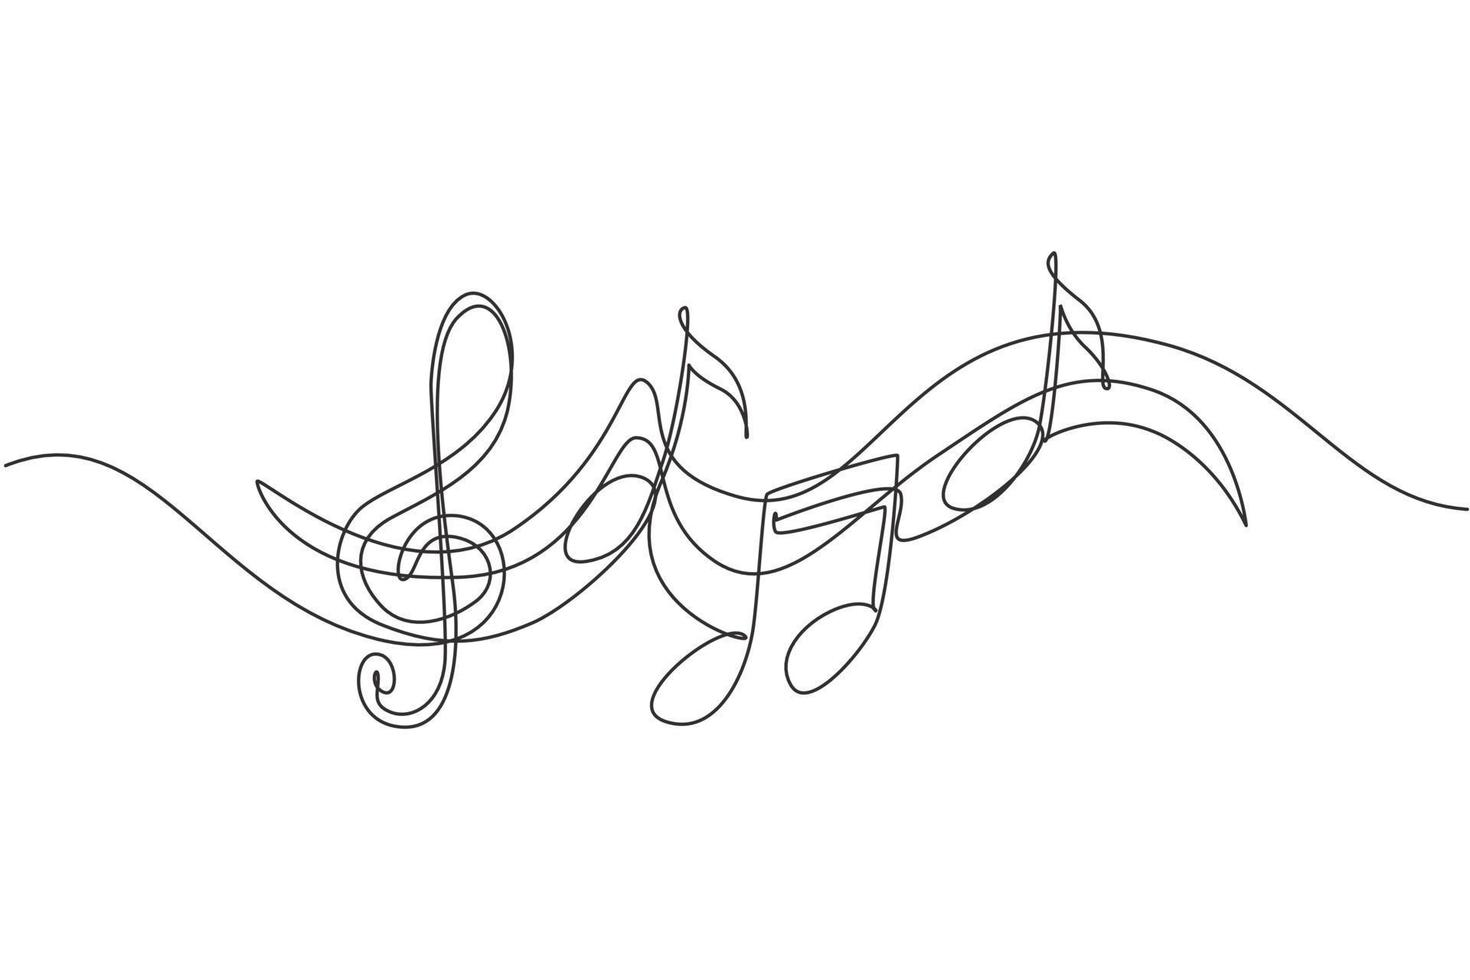 enkele doorlopende lijntekening muzieksymbolen. muzieknoot. muzikaal symbool in één lineaire minimalistische stijl. trendy abstracte golfmelodie. vector overzicht schets van geluid. grafisch ontwerp met één lijntekening